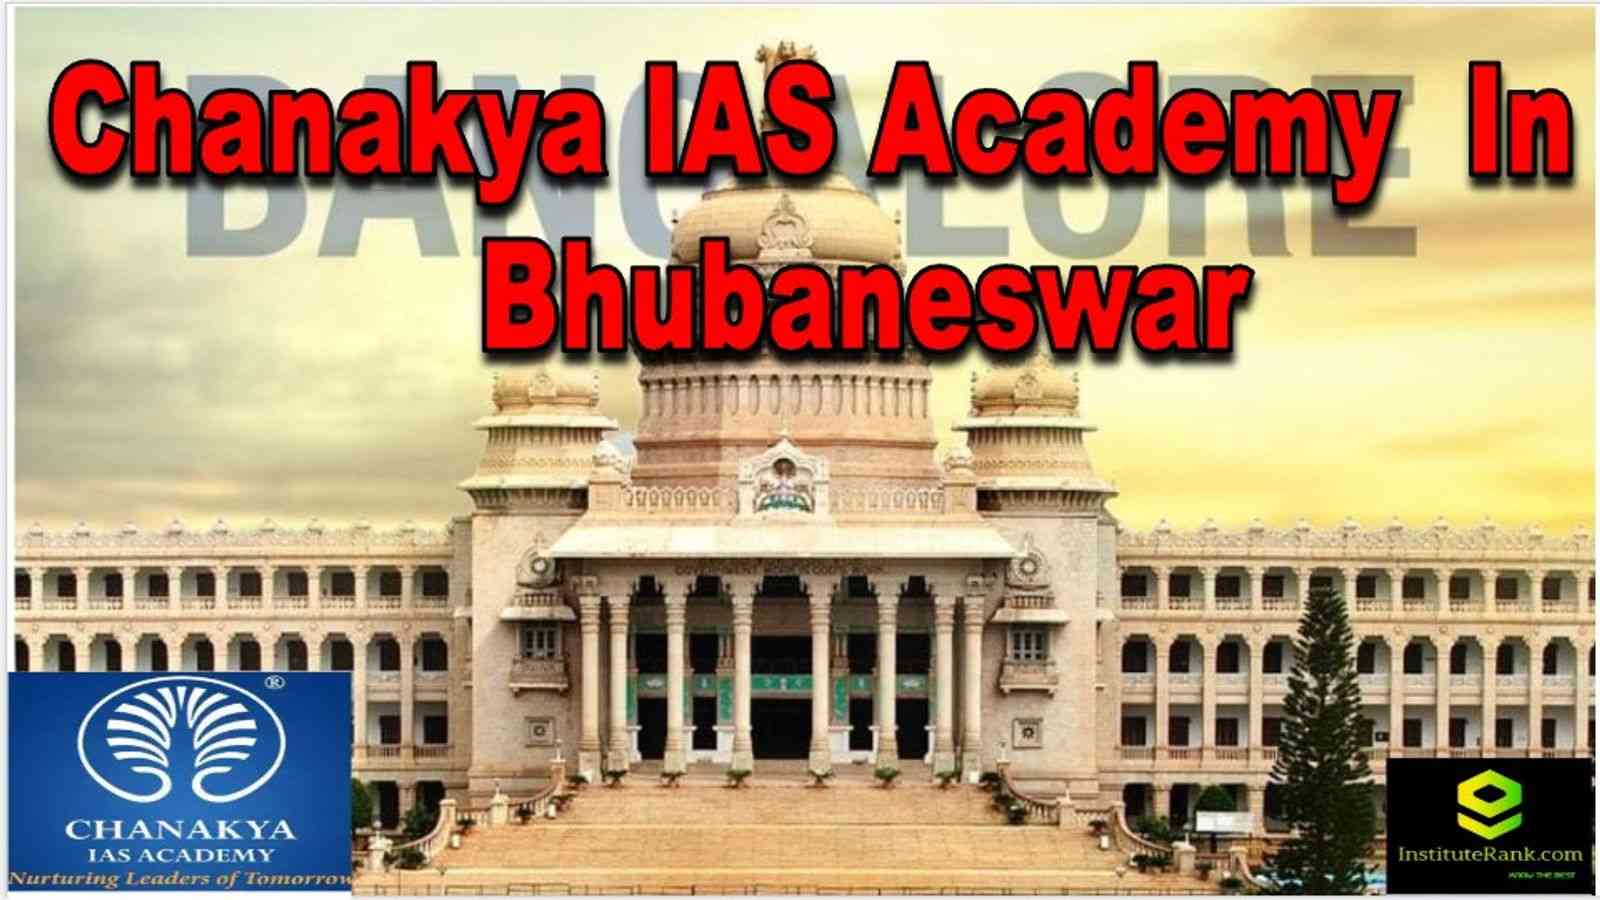 Chanakya IAS Academy in Bhubaneswar | IAS Coaching Bhubaneswar